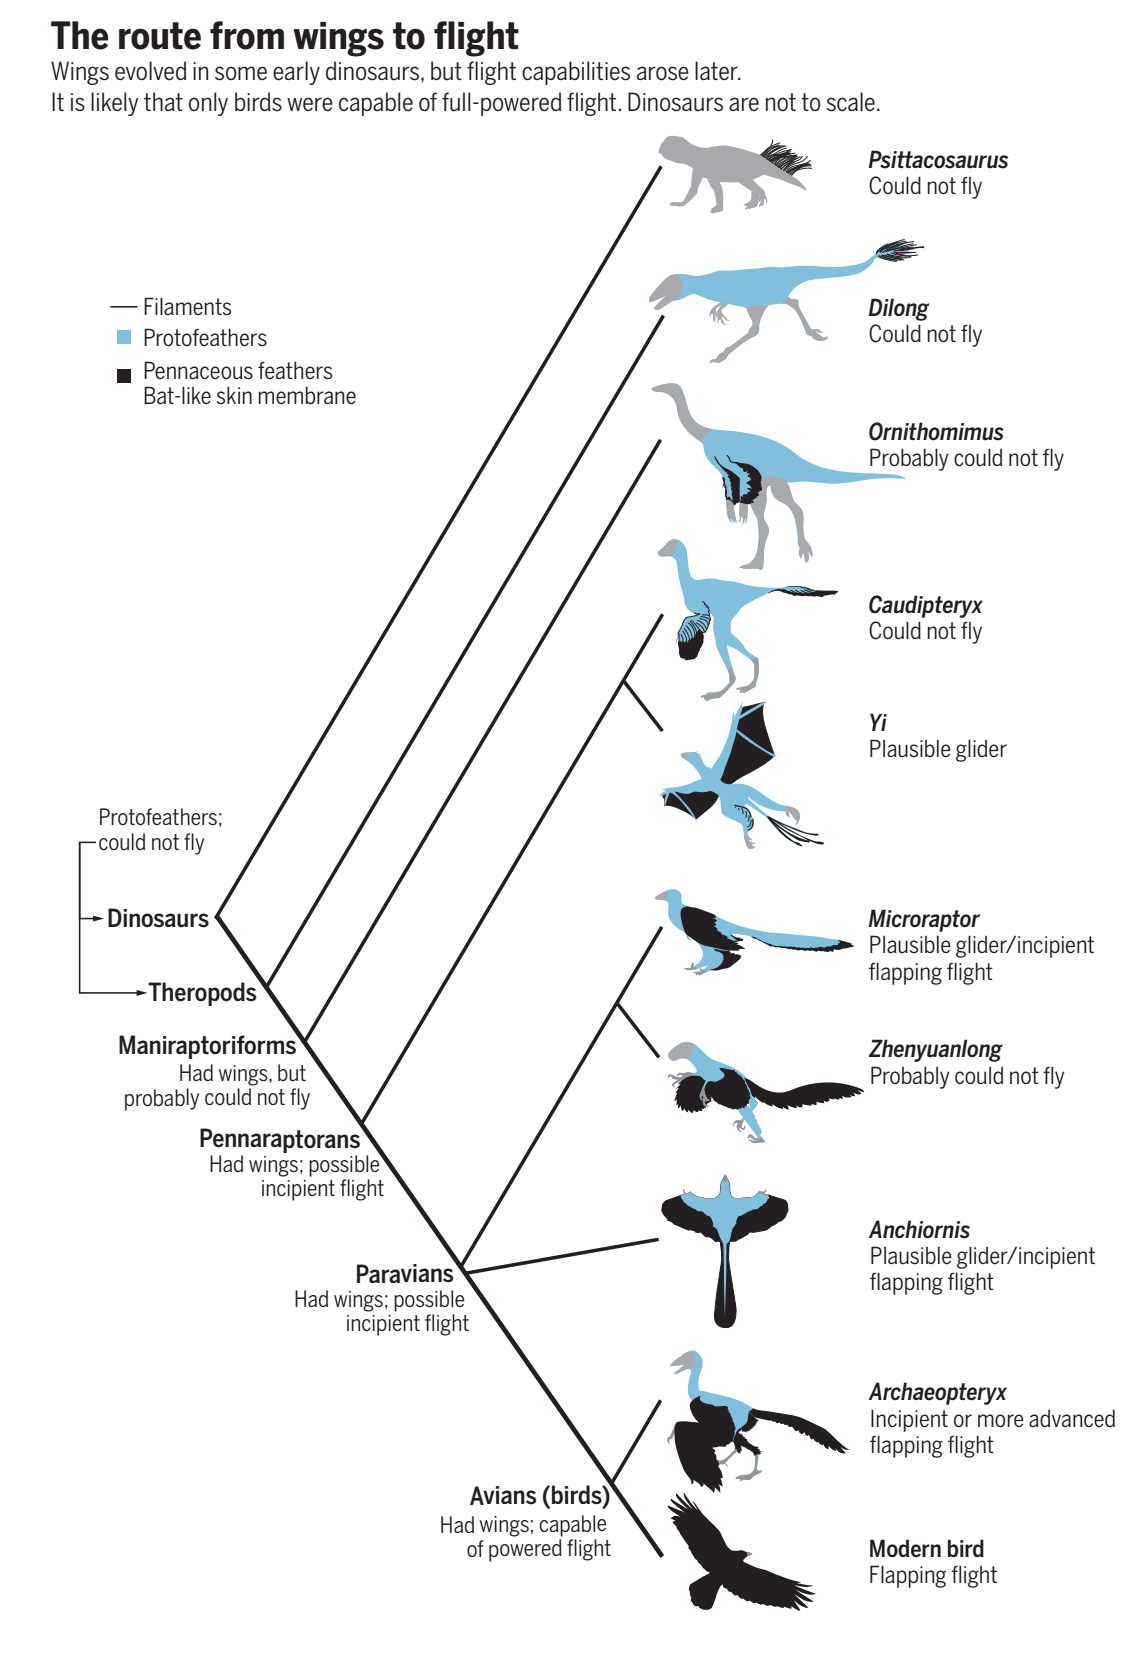 鸟类是活下来的恐龙吗?它们的差异真的少到可以将之混为一体吗?